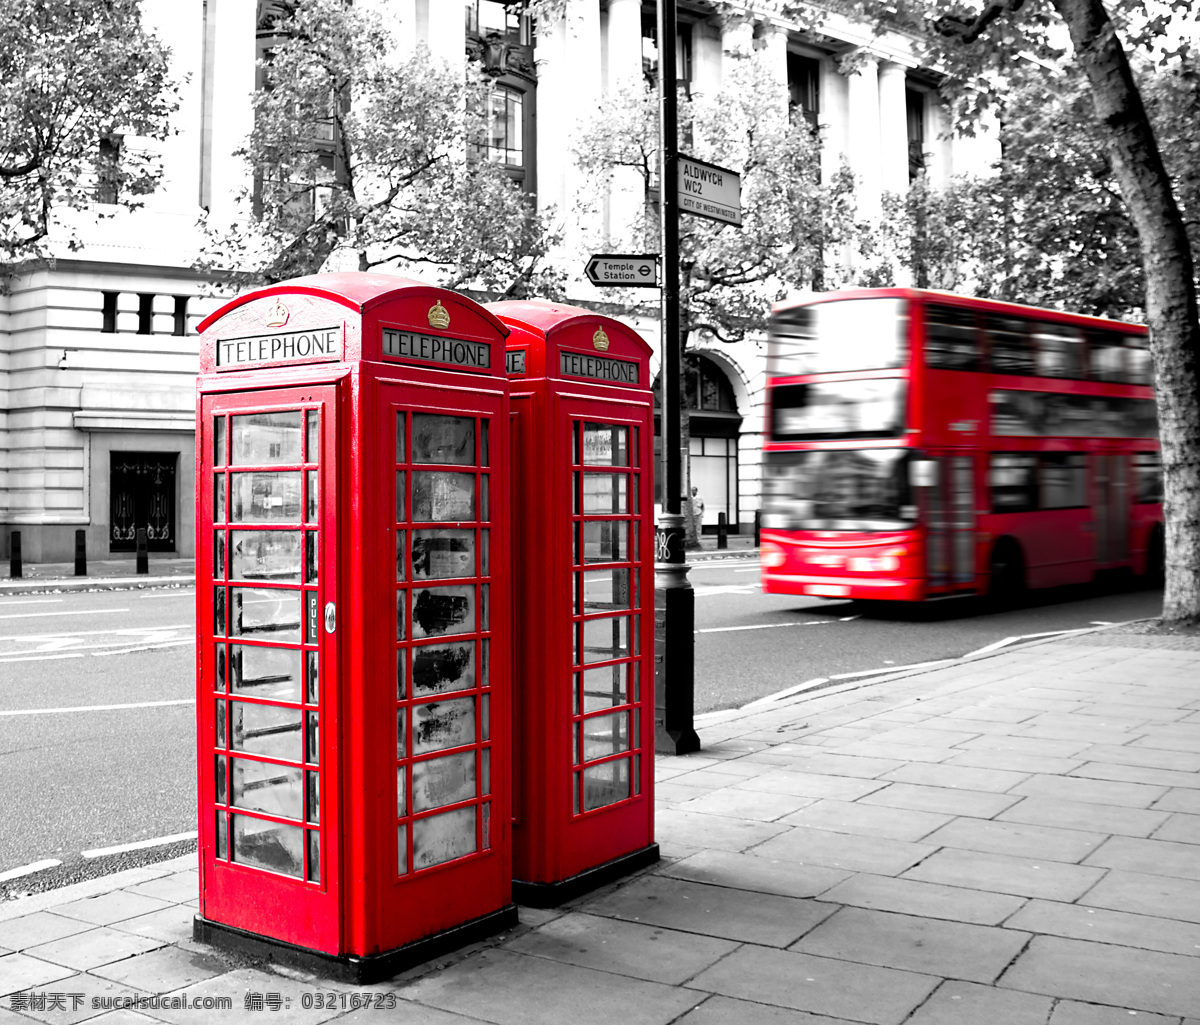 伦敦 红色 电话亭 英国 街头 黑白 公交车 巴士 大巴 铺砖 地面 街道 大街 街景 图片大全 高清图片 旅游摄影 国外旅游 背景素材